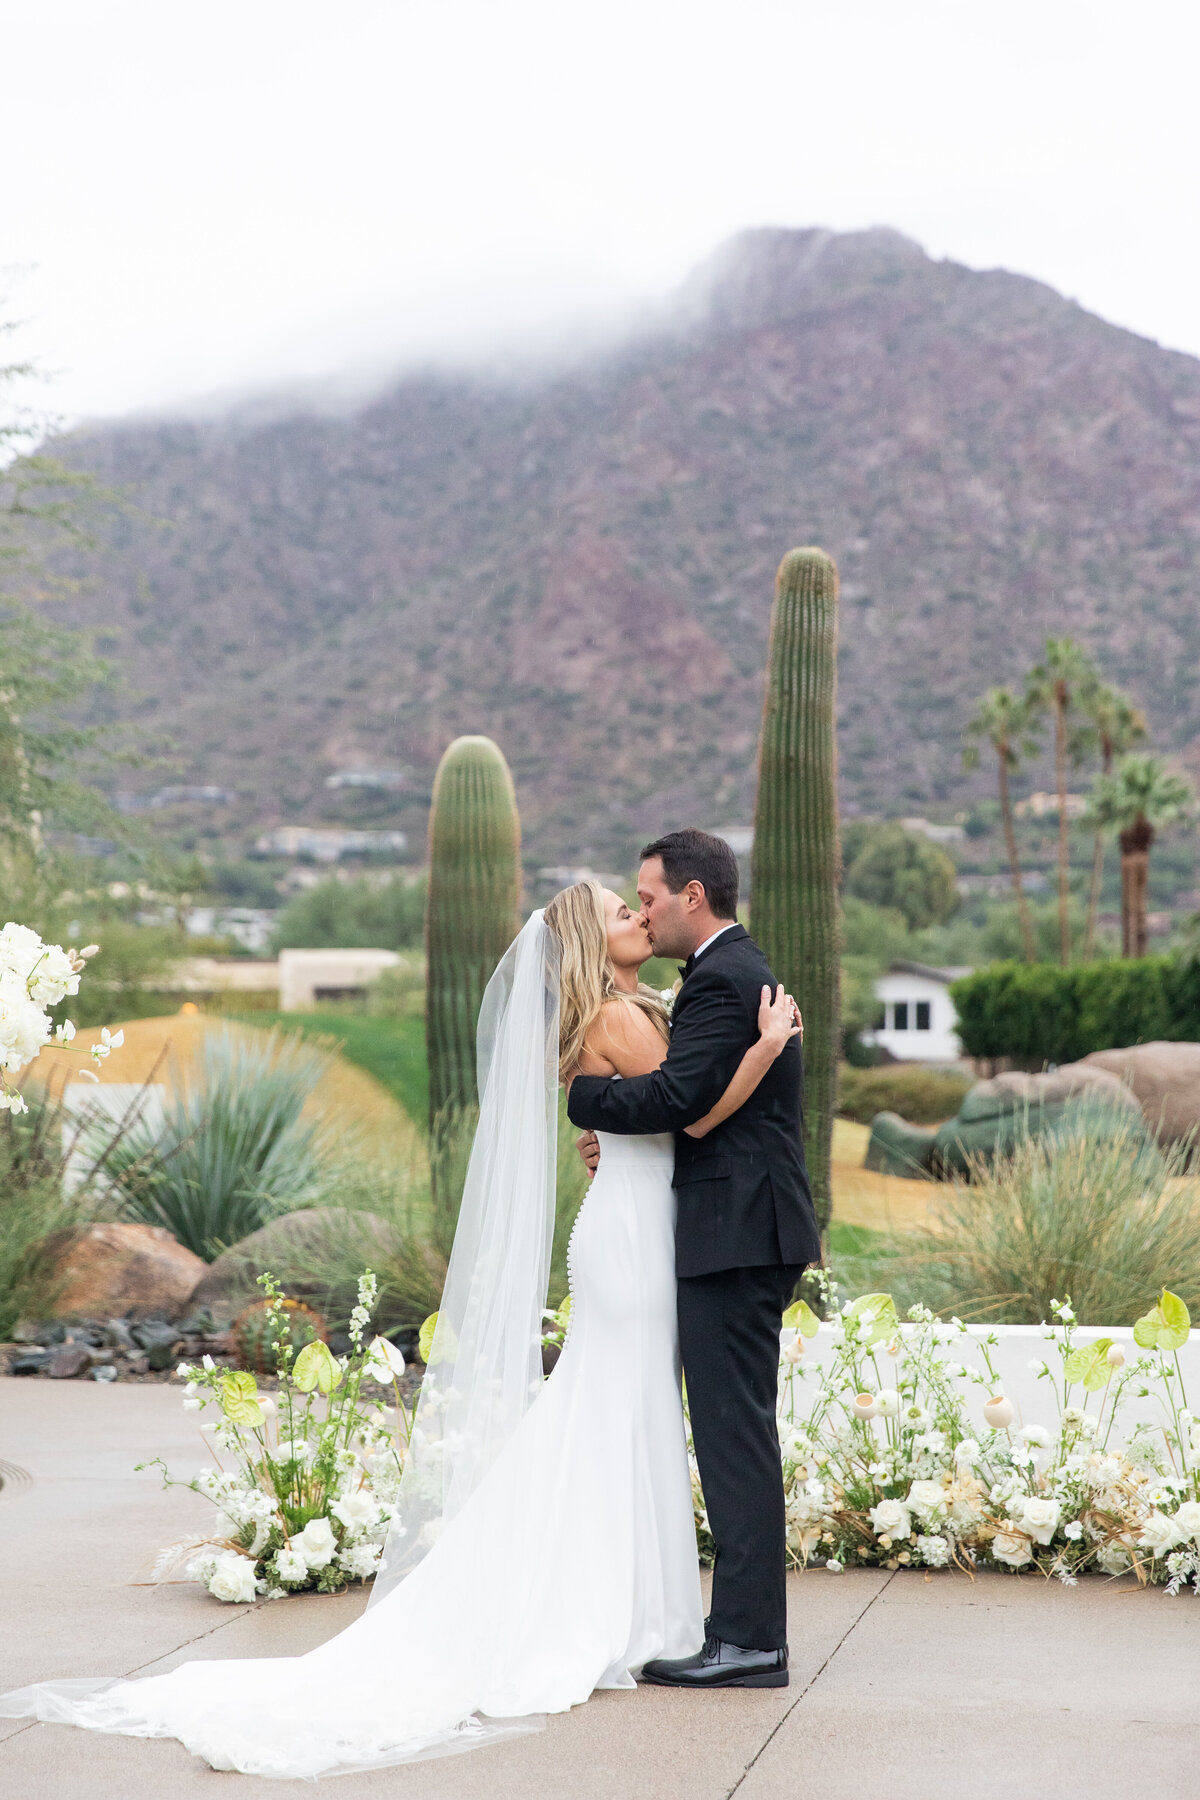 Karlie Colleen Photography - Molly & Casey - Mountain Shadows - Paradise Valley Arizona Wedding-491